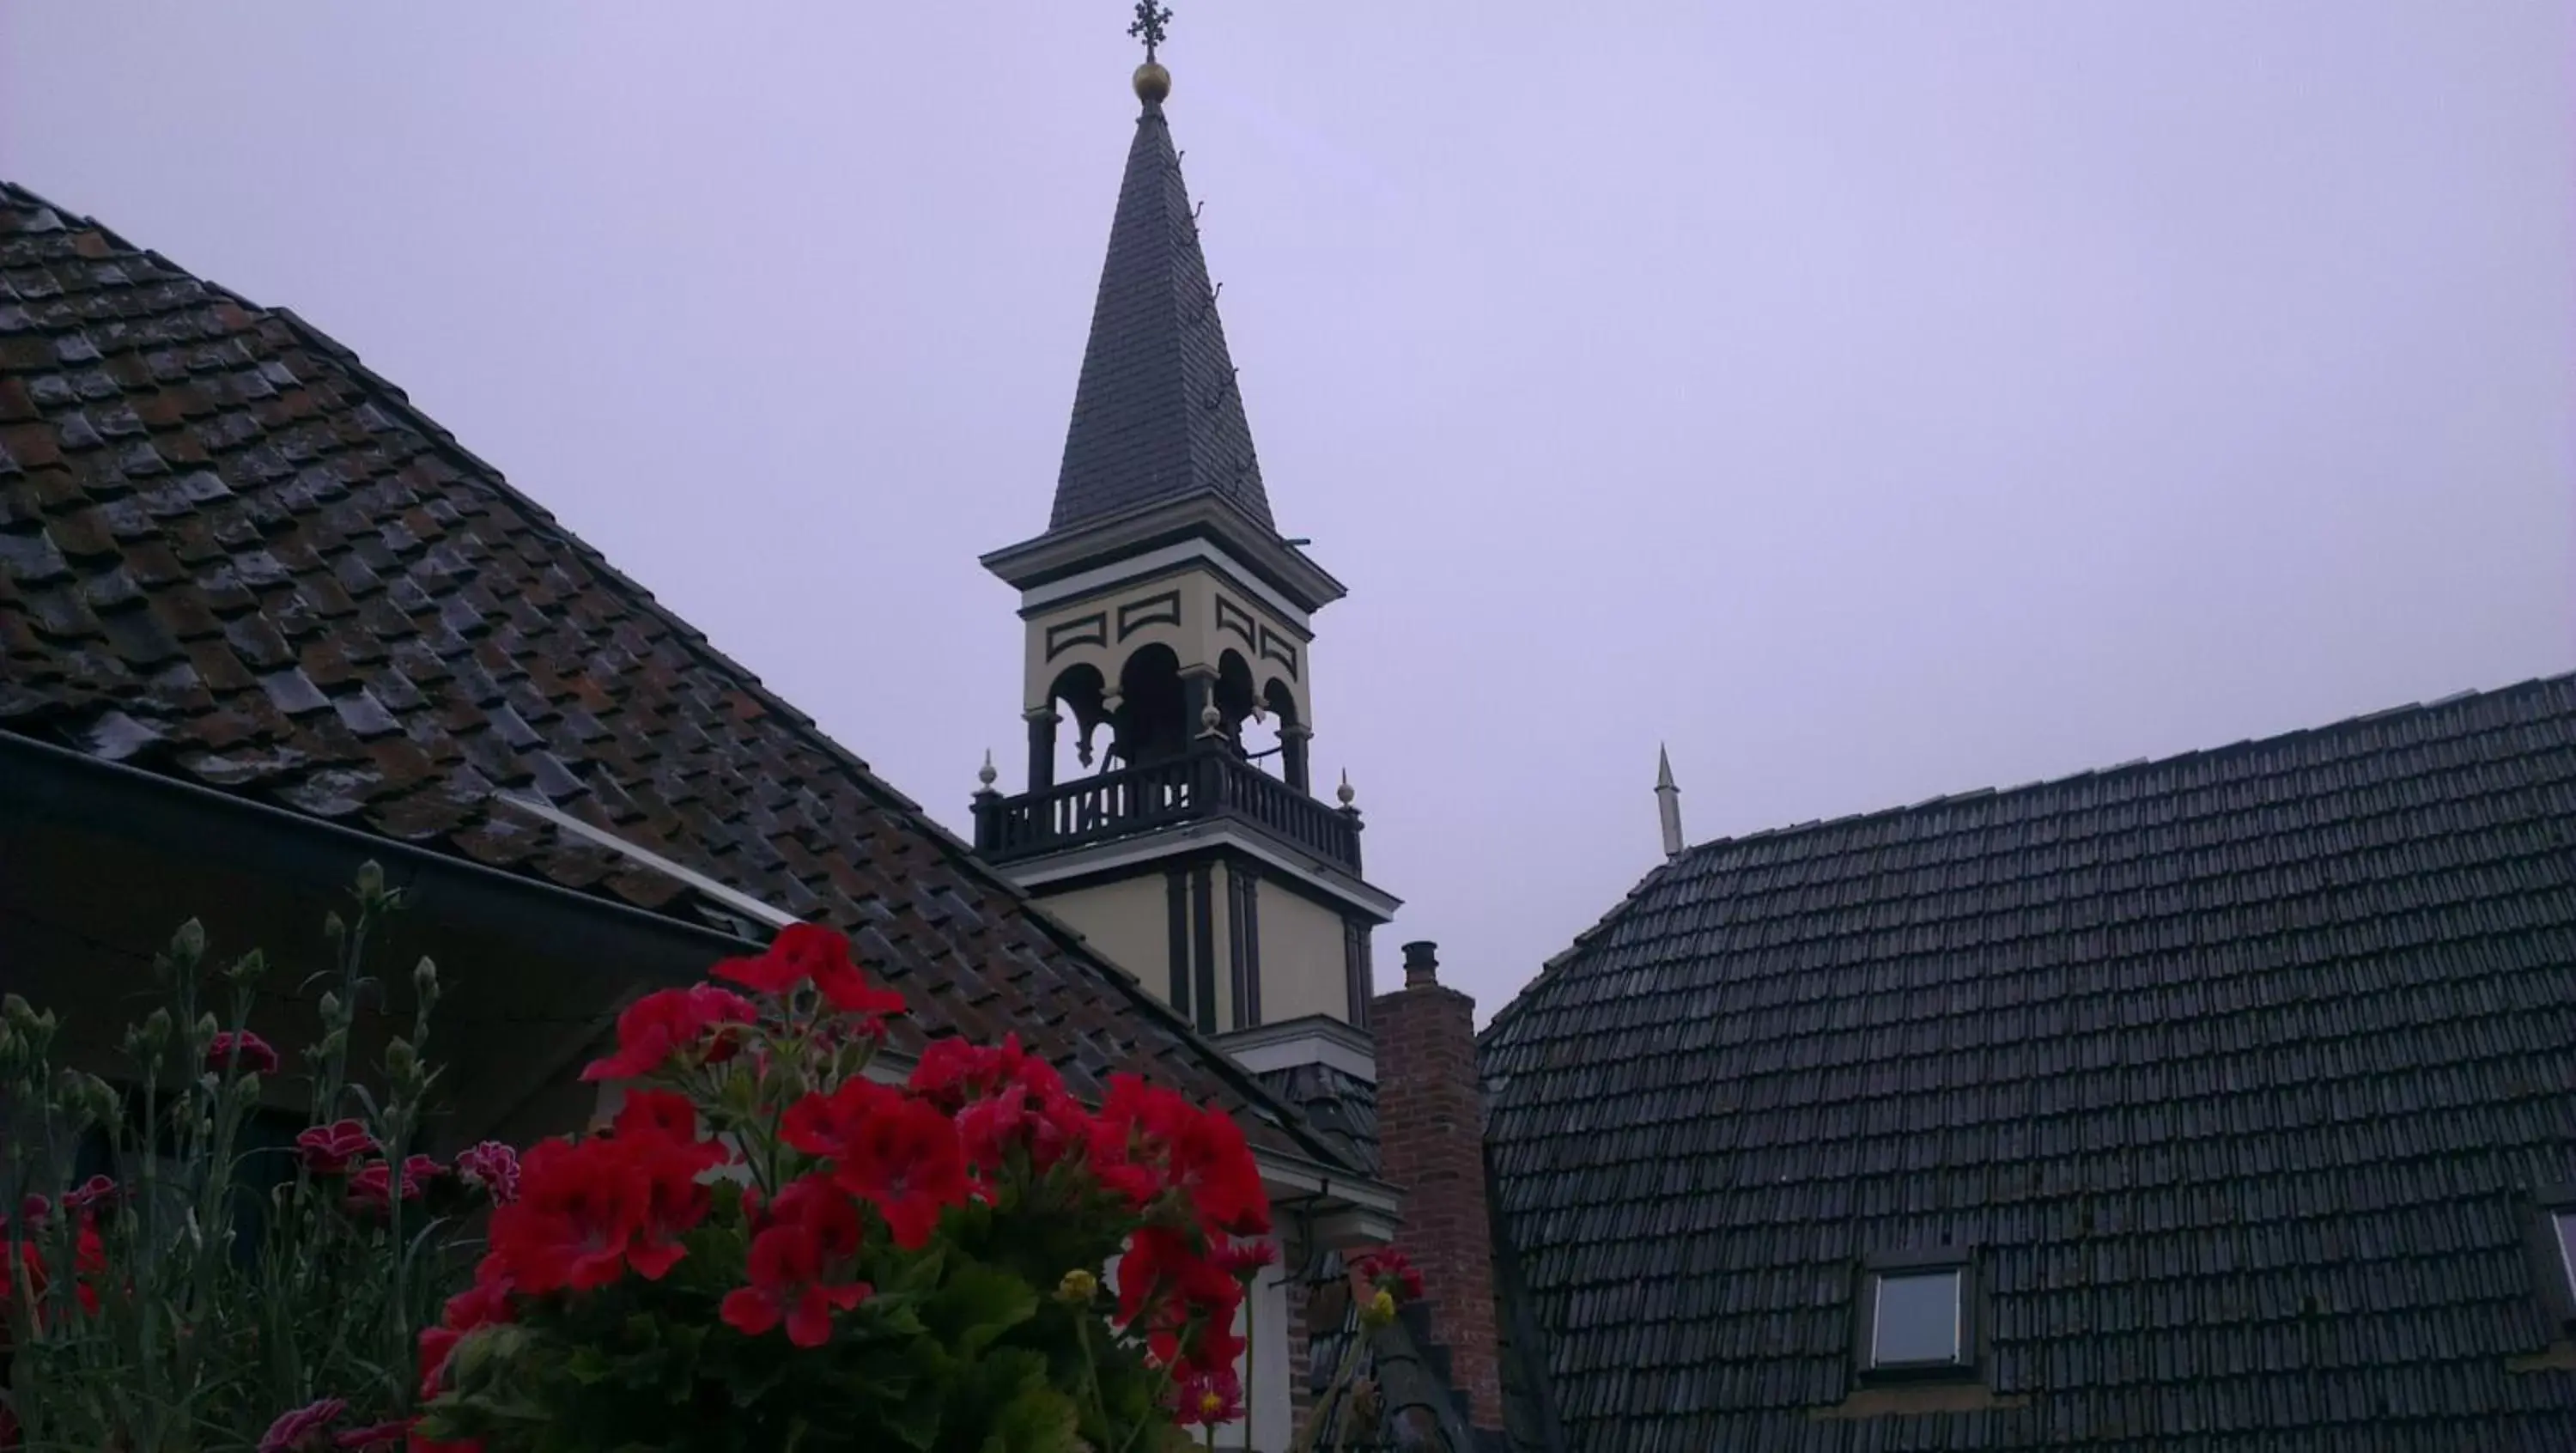 Place of worship in Logement 'De witte klok'